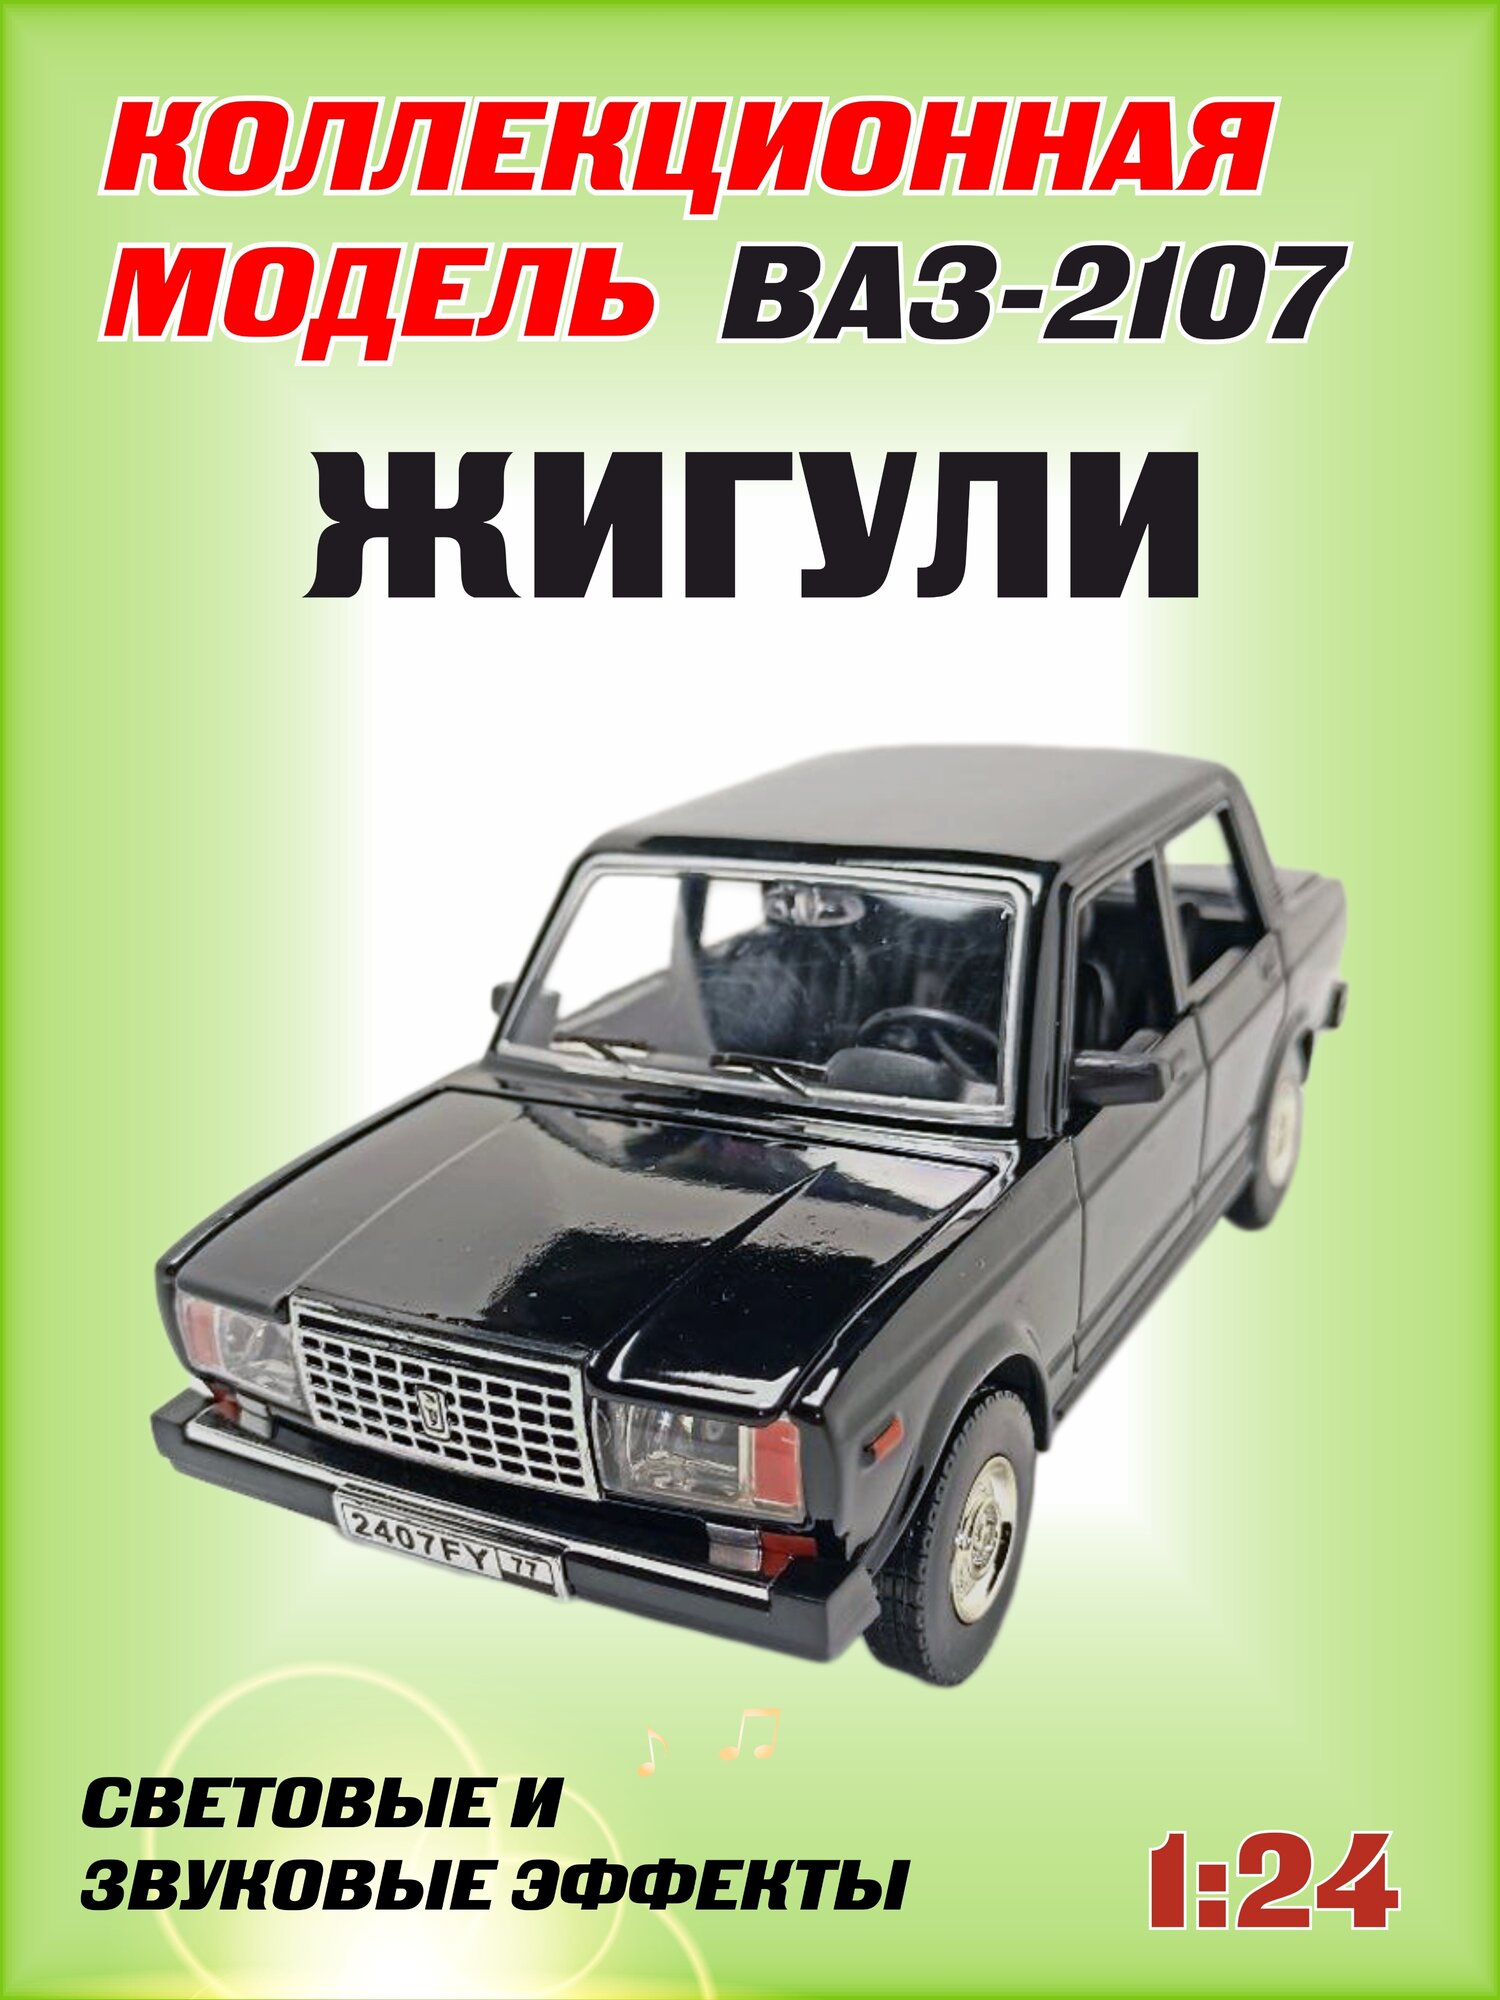 Коллекционная машинка игрушка металлическая Жигули ВАЗ 2107 для мальчиков масштабная модель 1:24 черная2